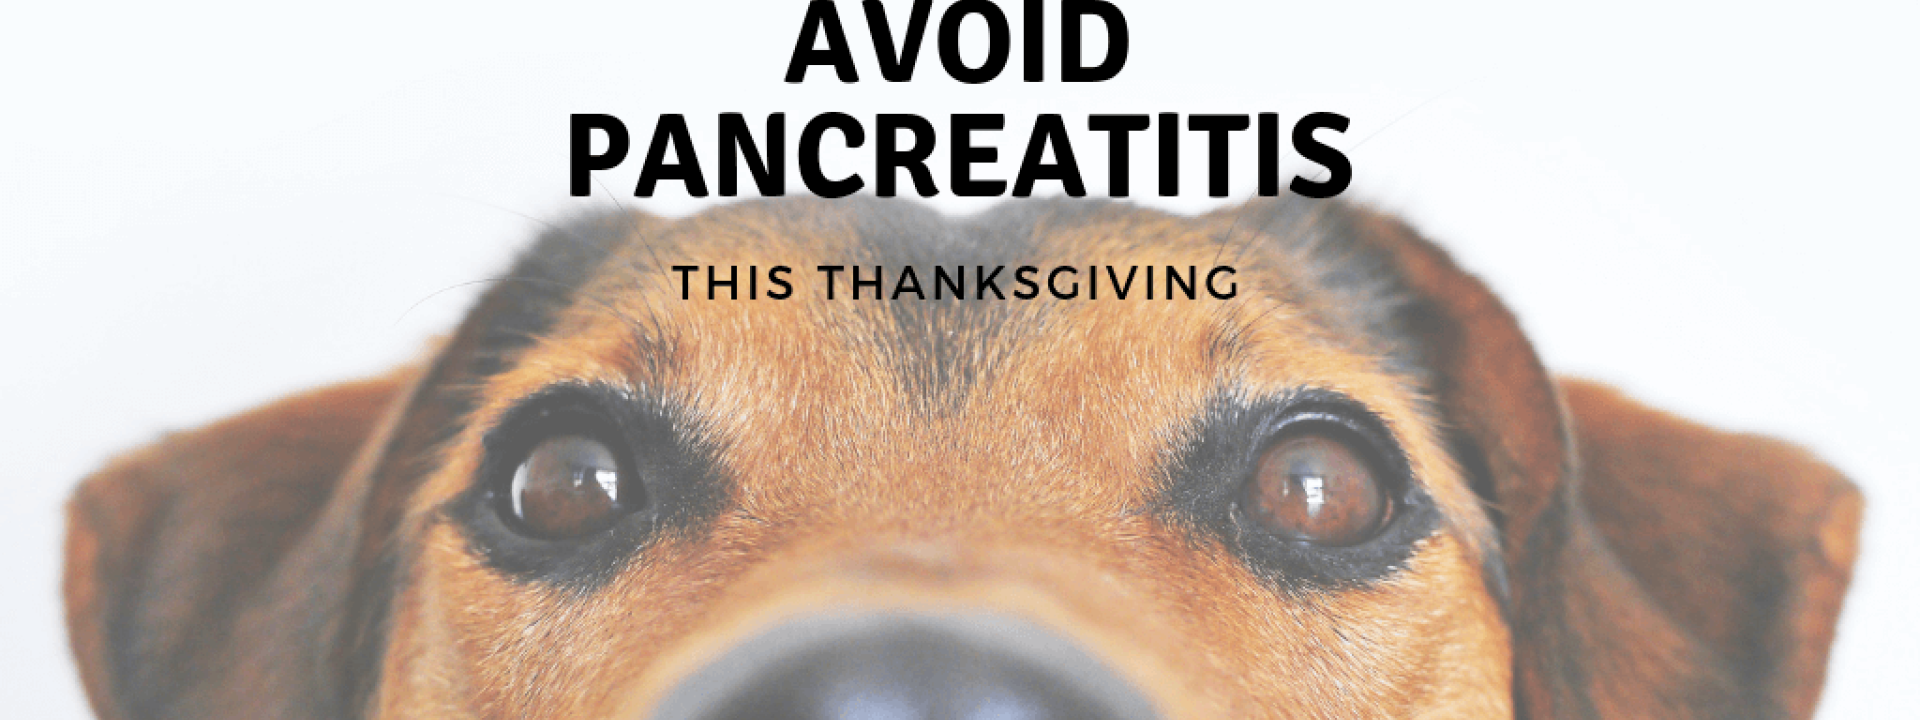 Pancreatitis-blog-header.png